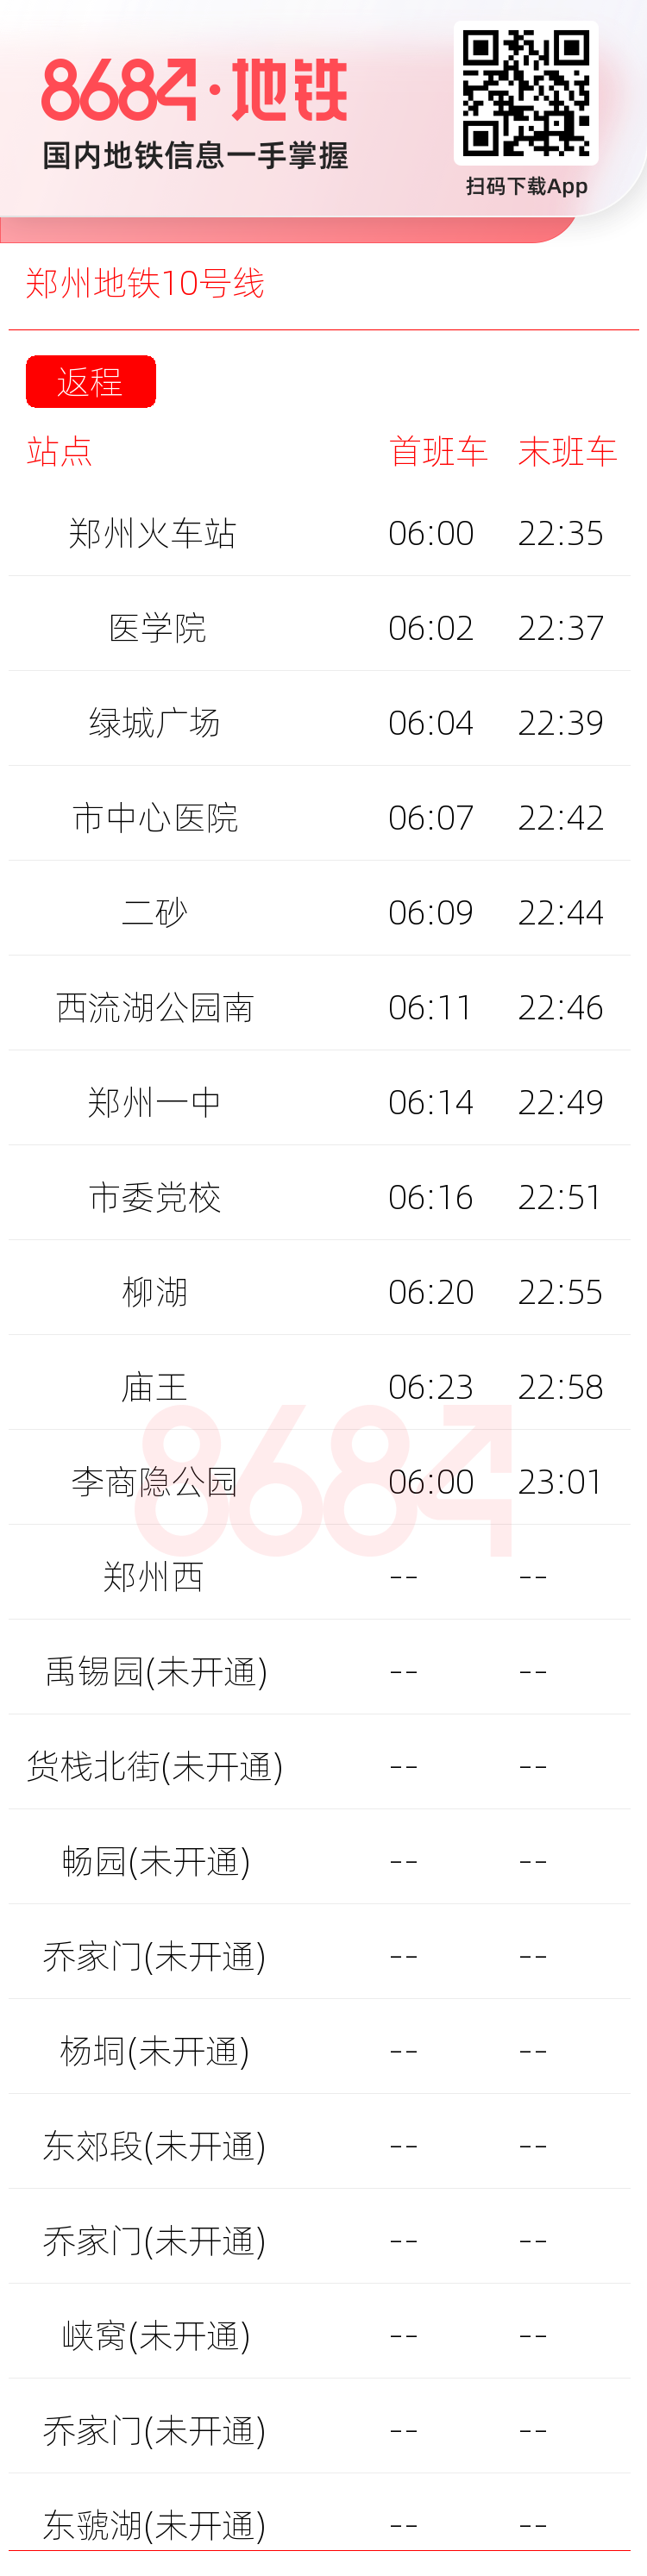 郑州地铁10号线运营时间表